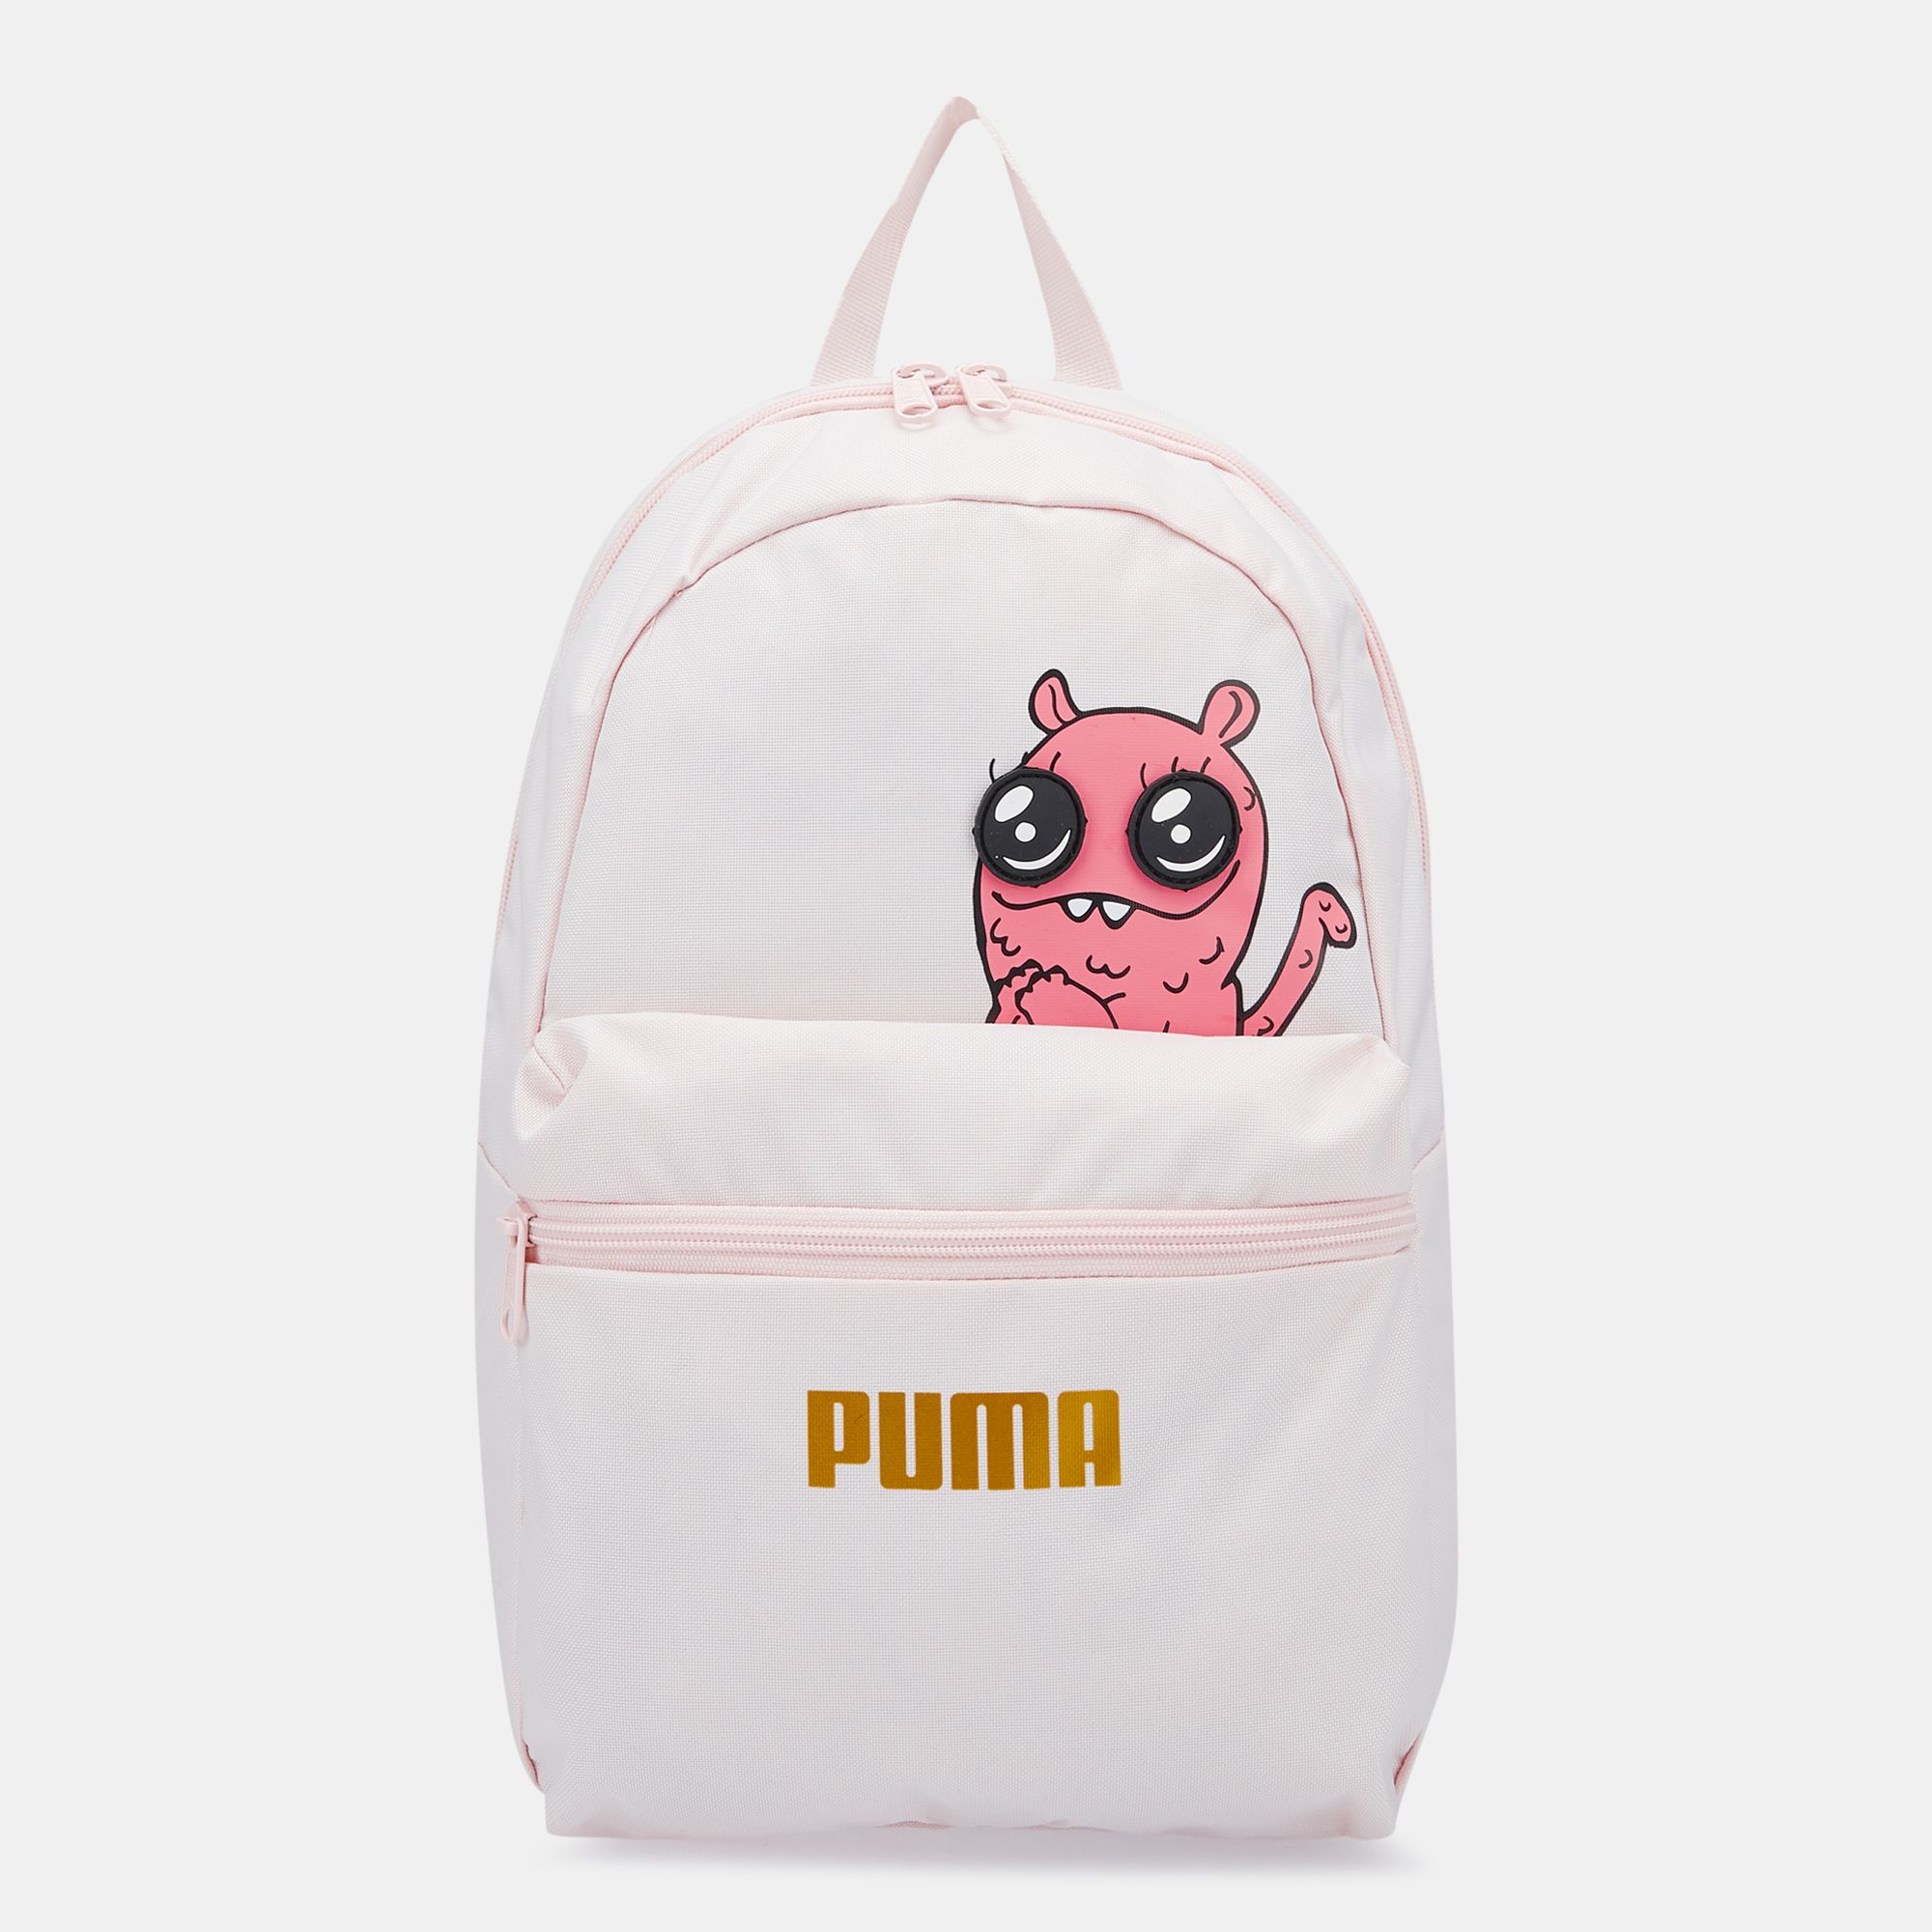 PUMA Kids' Monster Backpack (Older Kids 